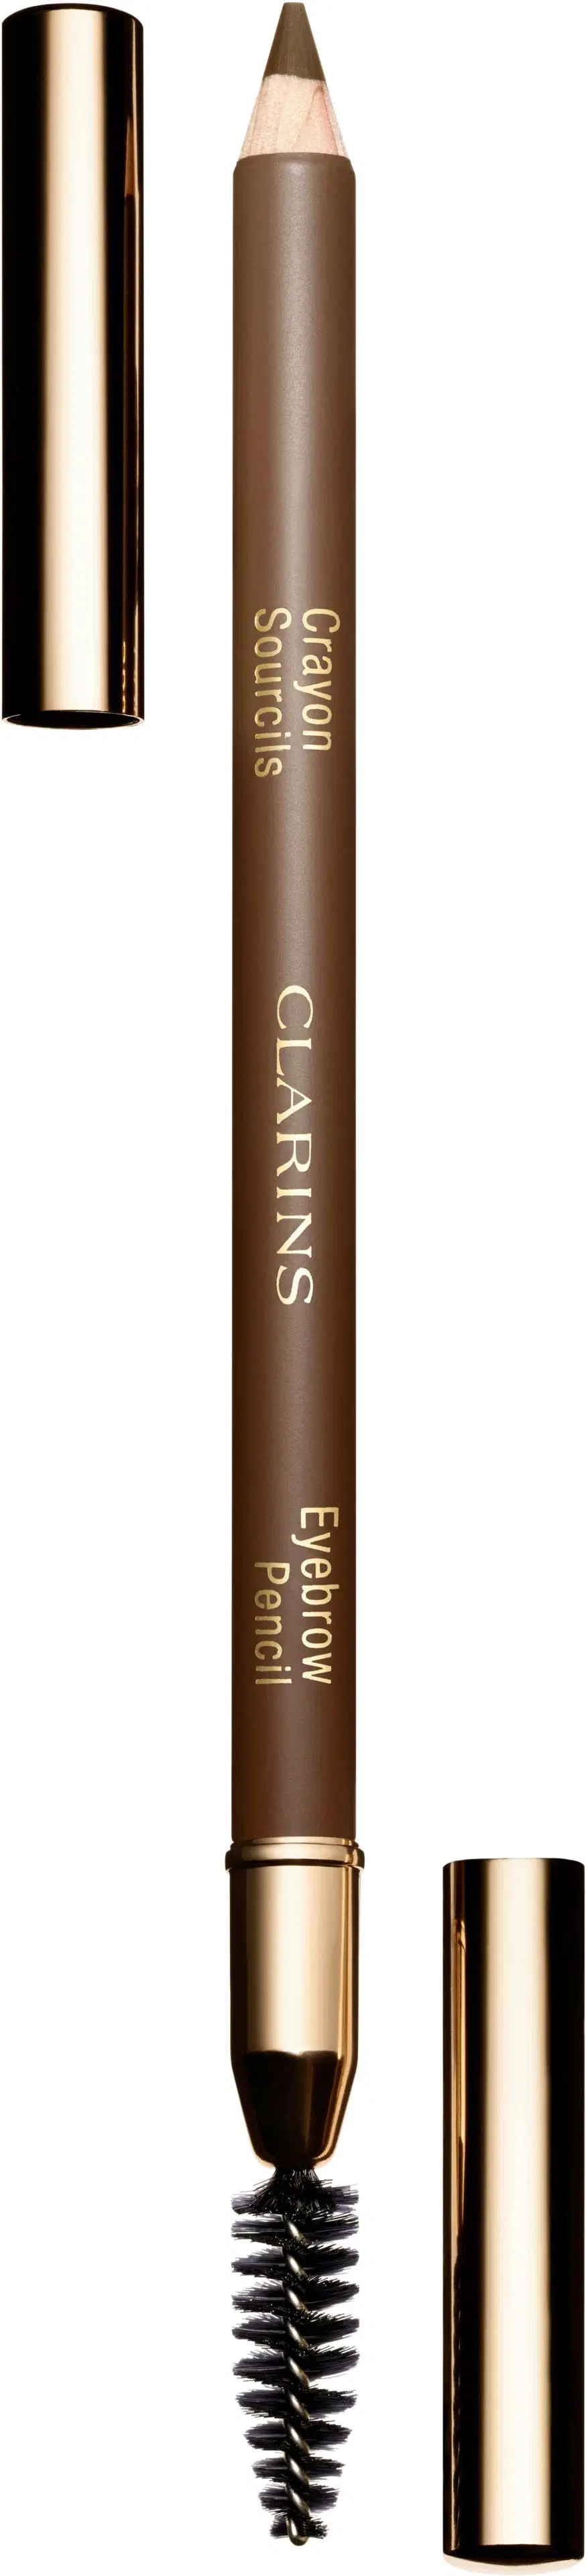 Clarins Eyebrow Pencil kulmakynä 1,3 g